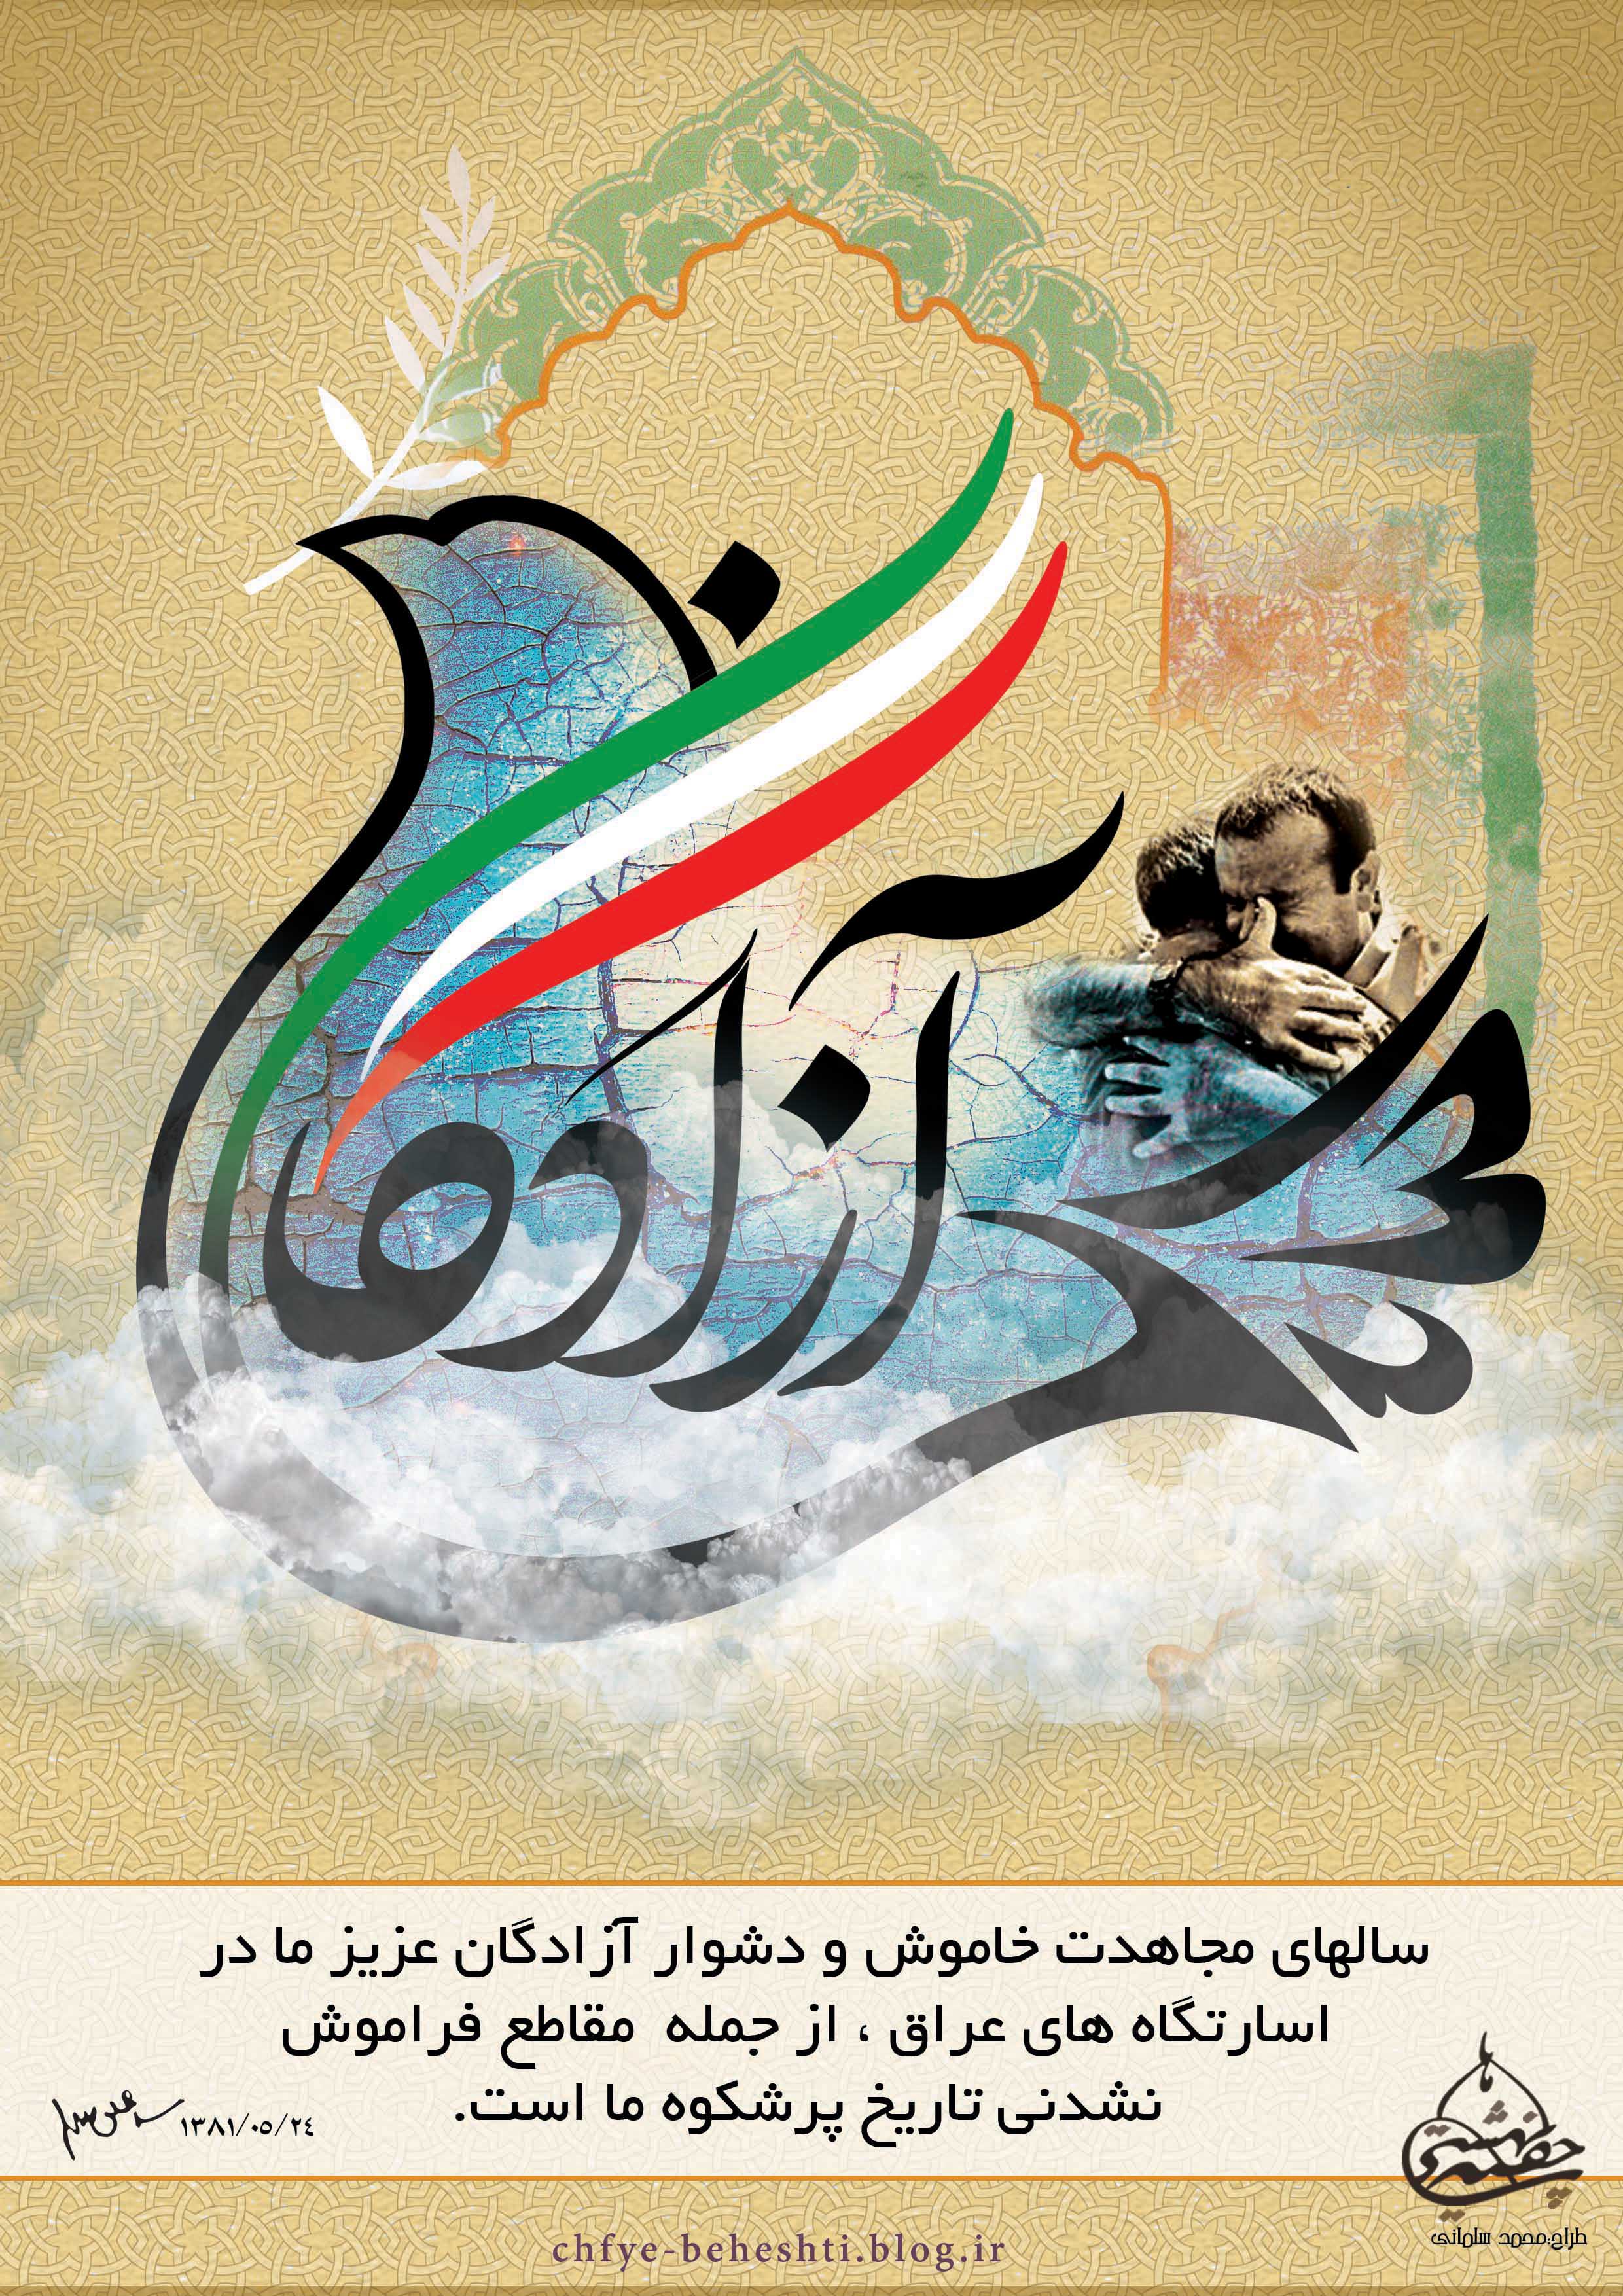 پوستر بازگشت آزادگان به میهن اسلامی